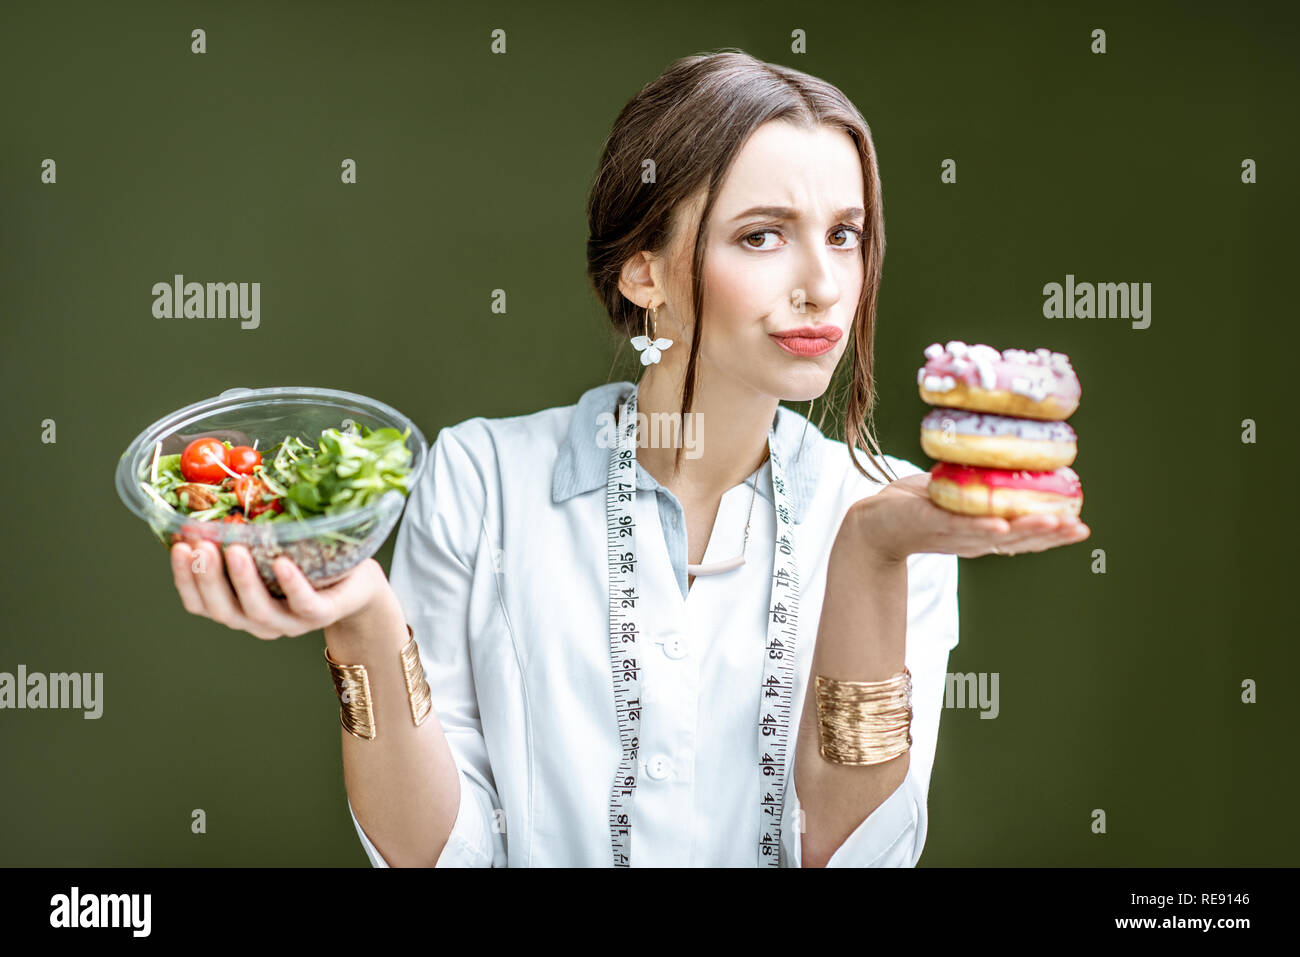 Jeune femme nutritionniste à sur le donuts avec émotions triste de choisir entre la salade et dessert malsaine sur le fond vert Banque D'Images